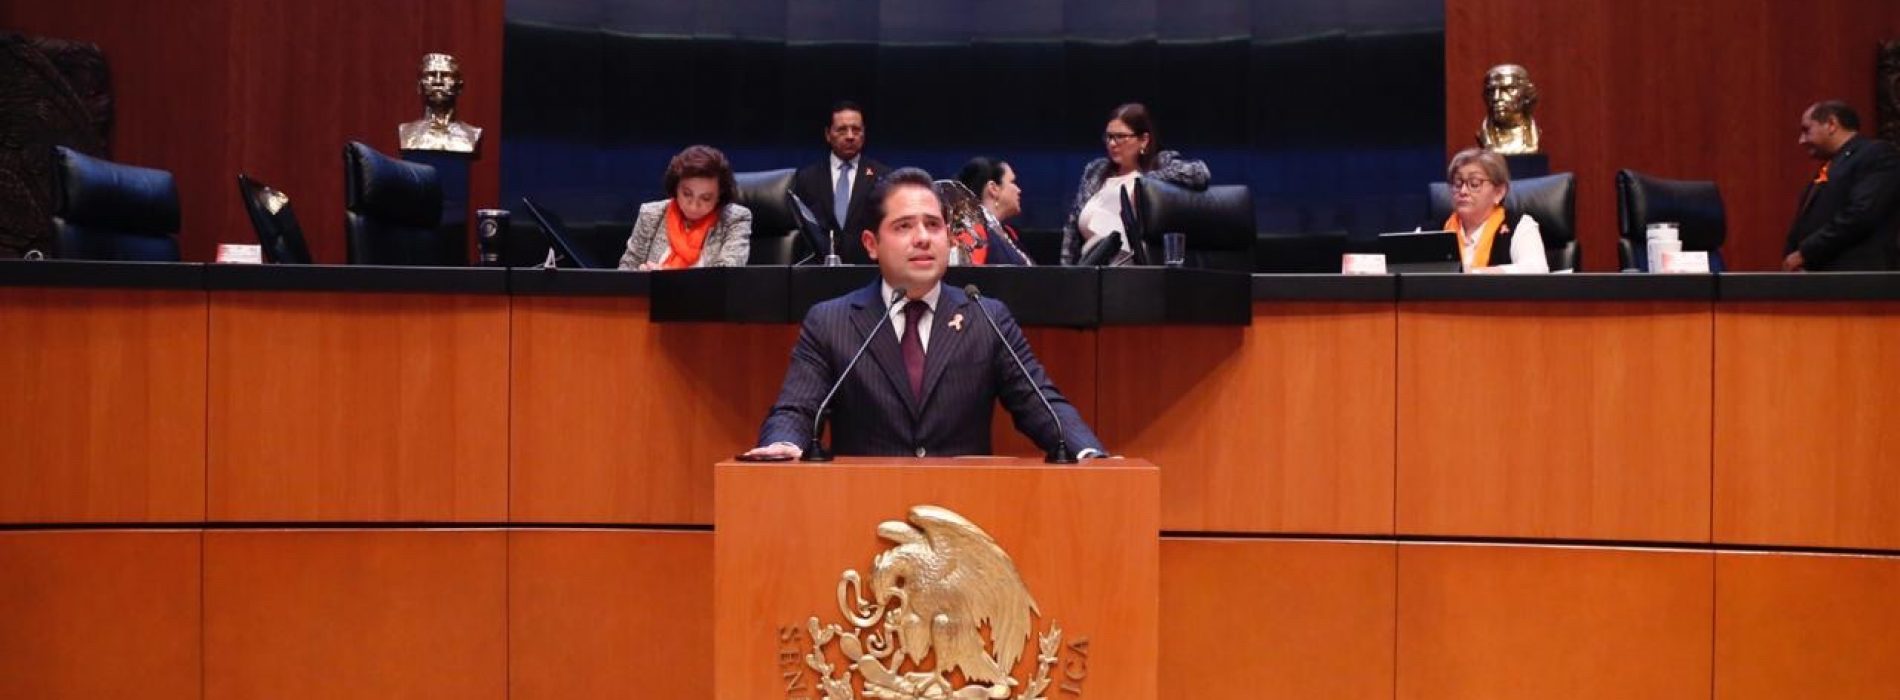 Jóvenes el futuro de México: Senador Raúl Bolaños Cacho Cué